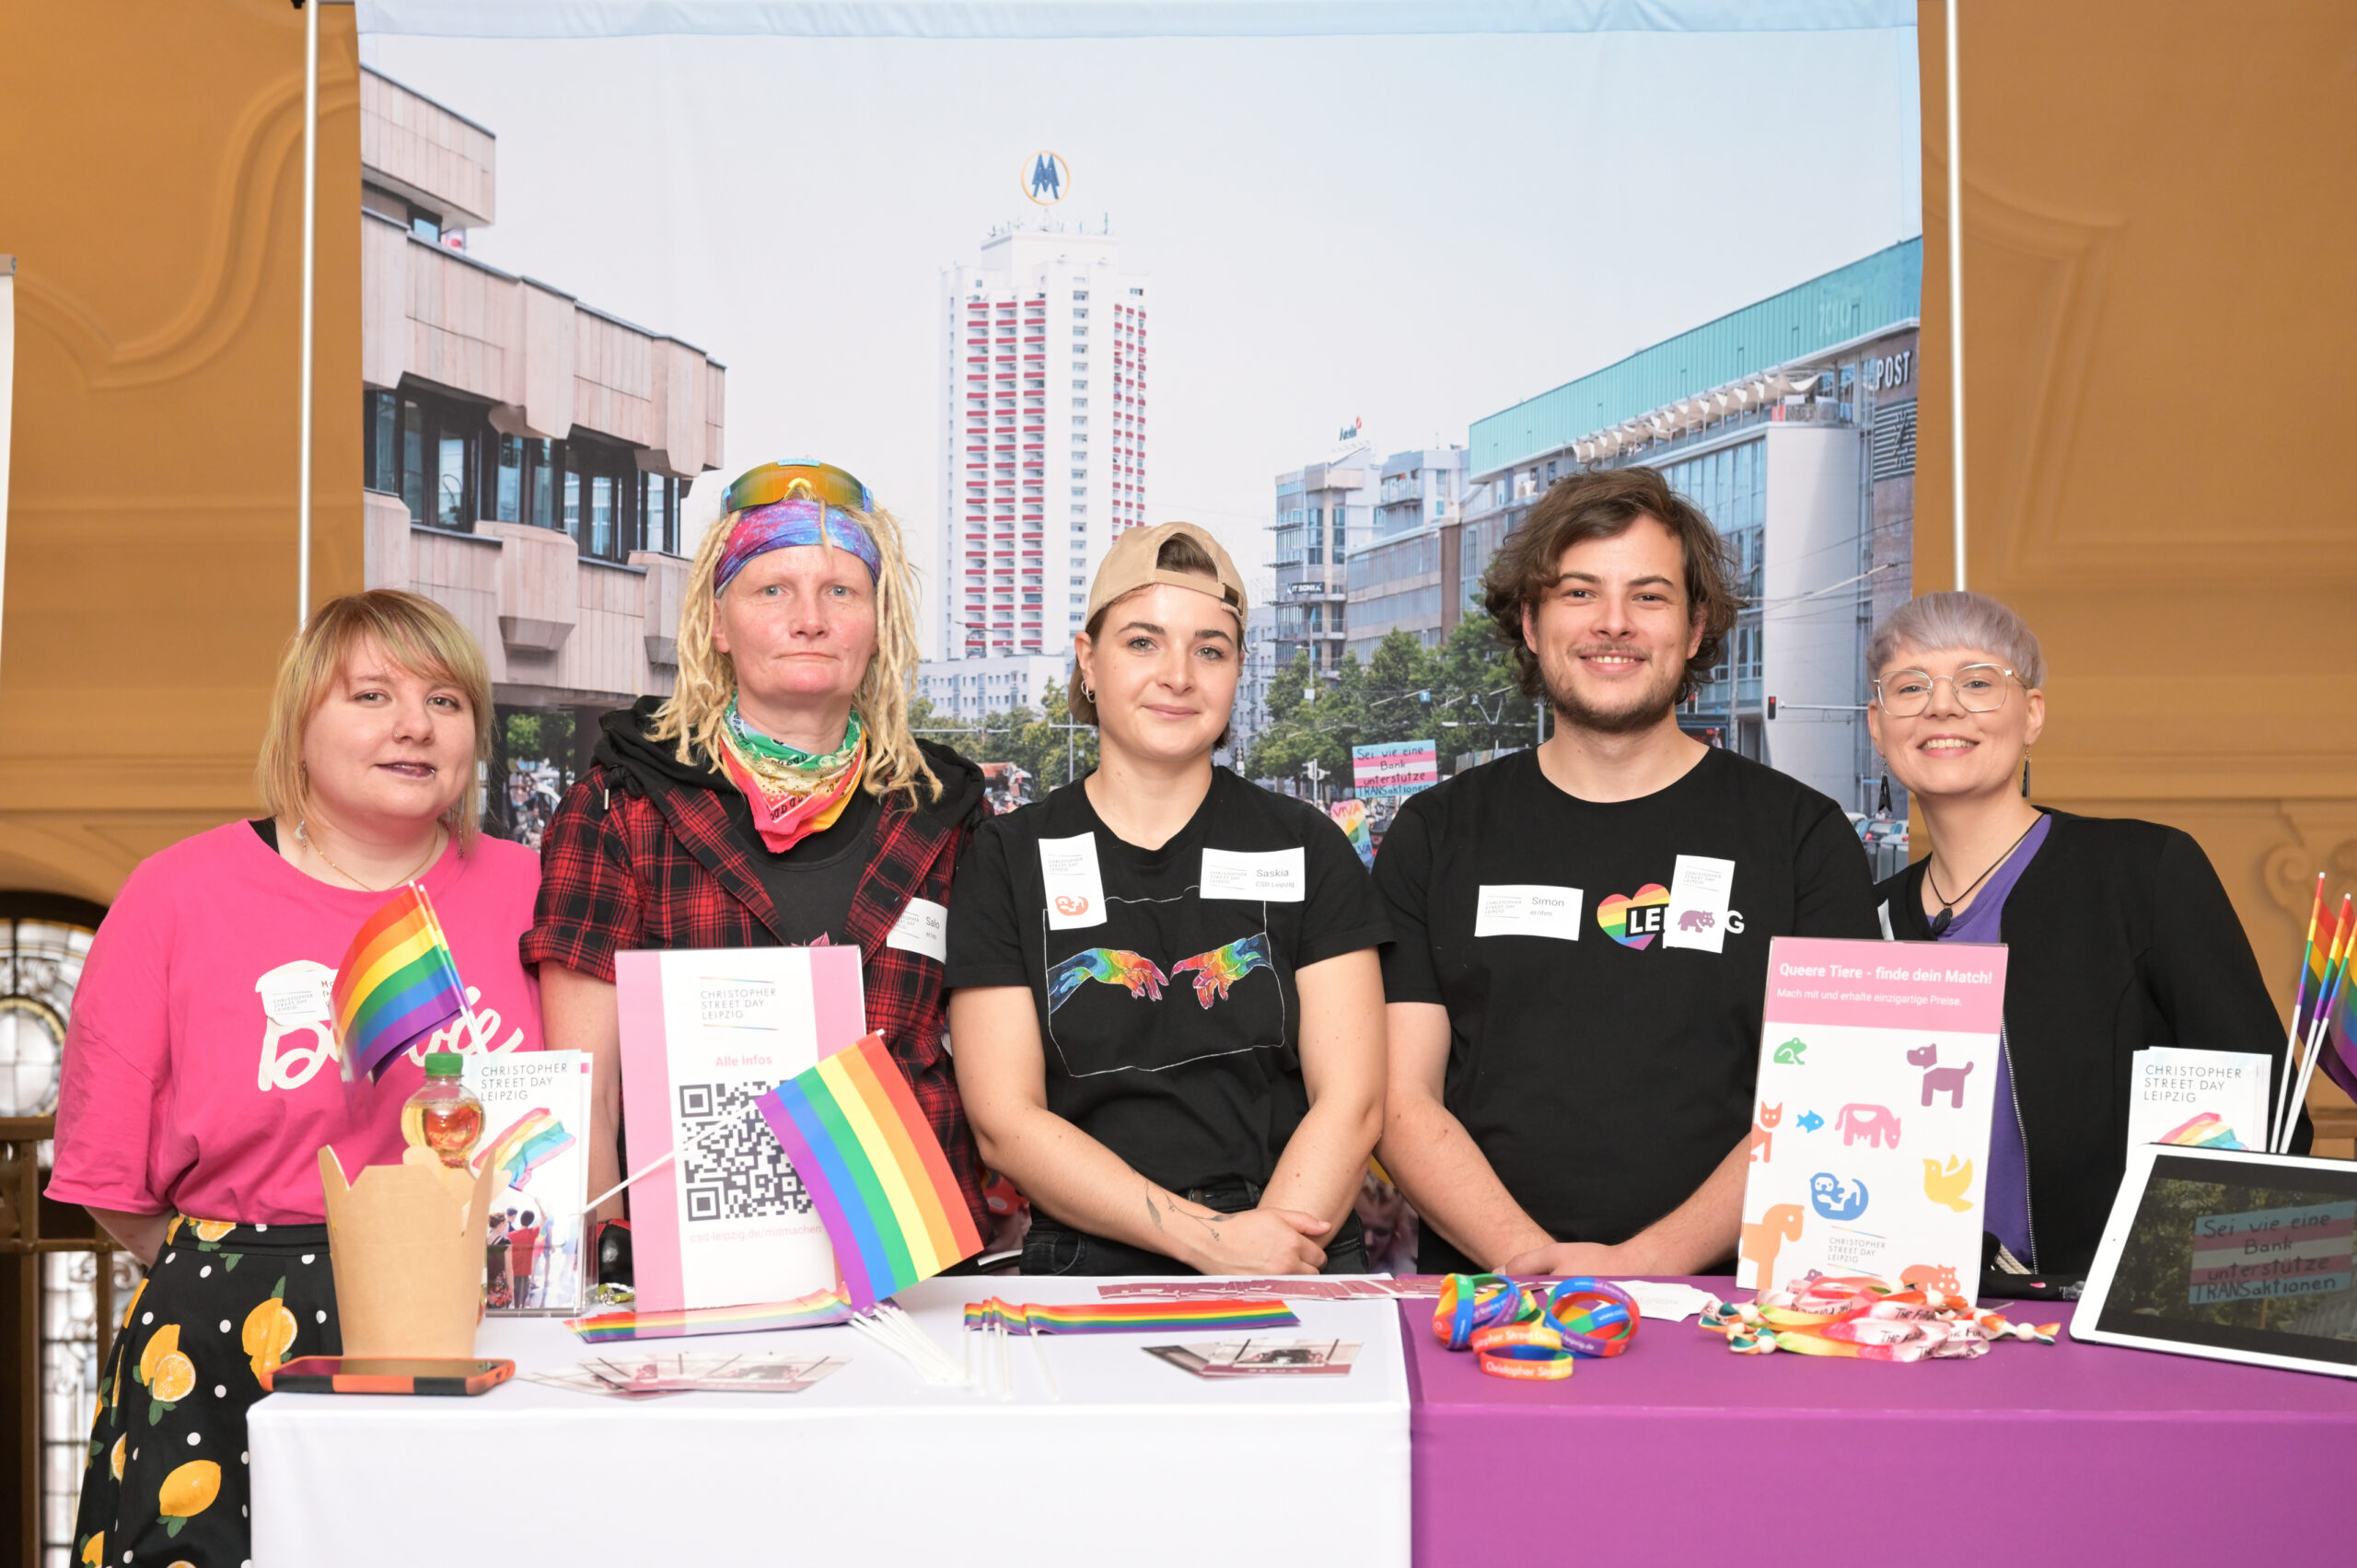 Fünf Personen am Stand des Christopher Street Day Leipzig. Fähnchen und diverse Kleidungsstücke in Regenbogen-Farben